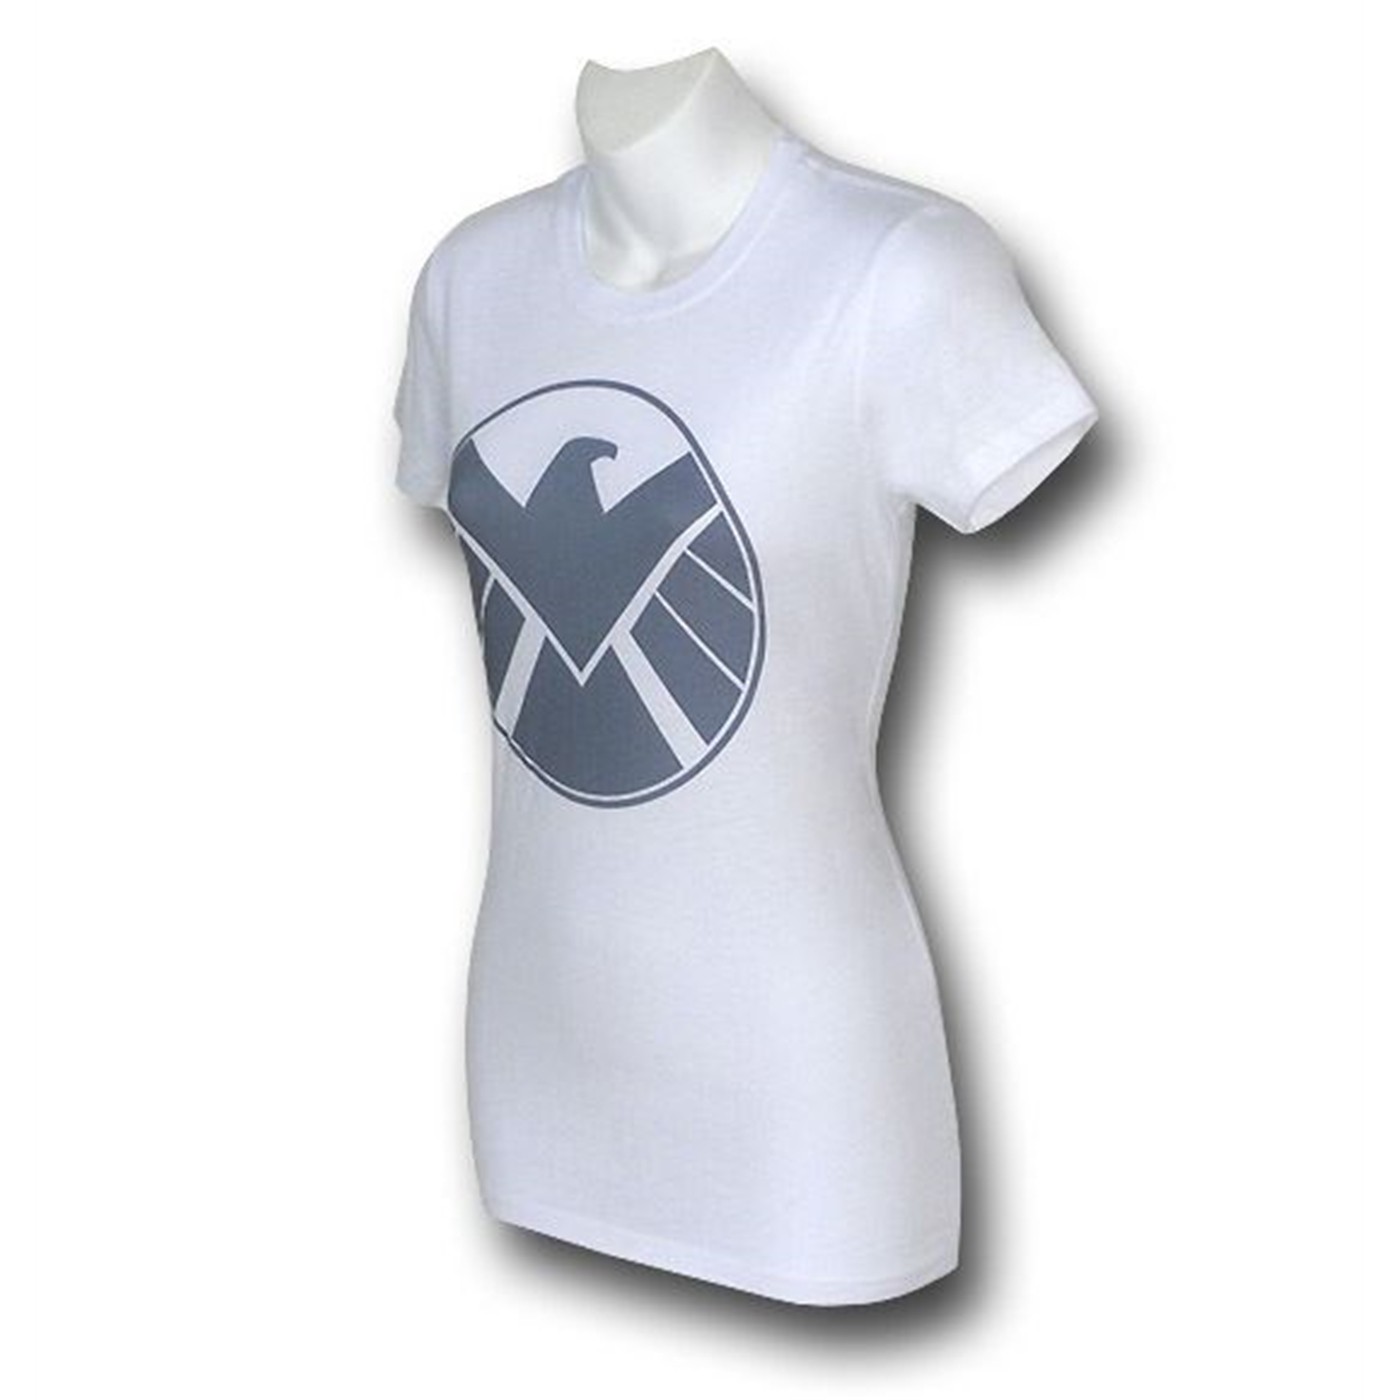 S.H.I.E.L.D. Silver Eagle Juniors T-Shirt